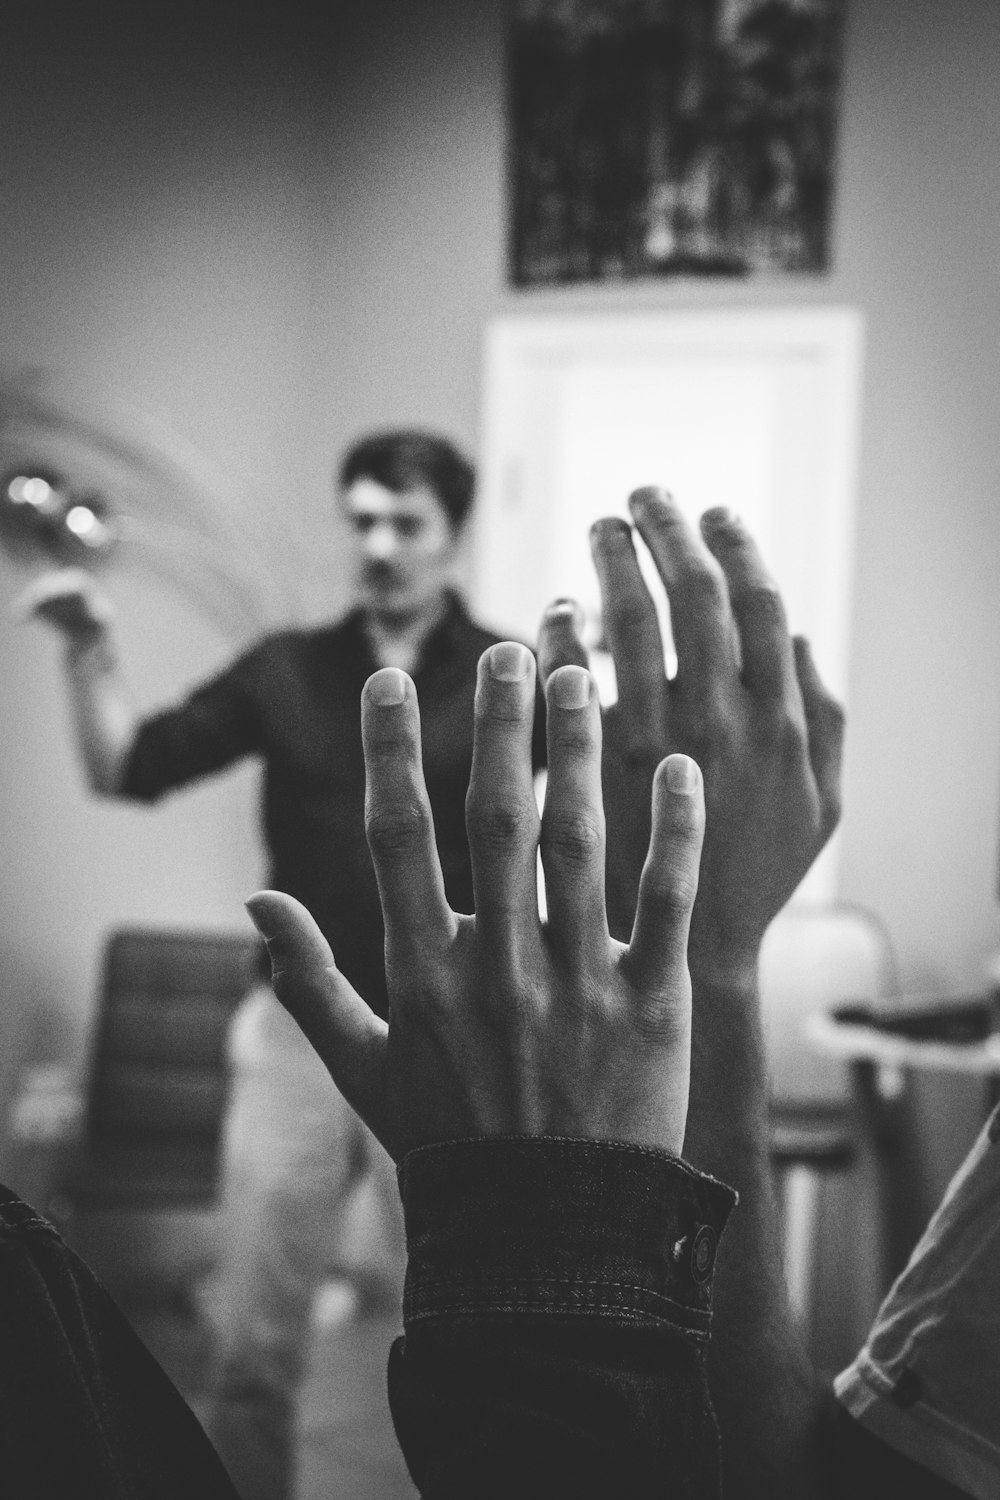 손을 들고 있는 두 사람의 회색조 사진